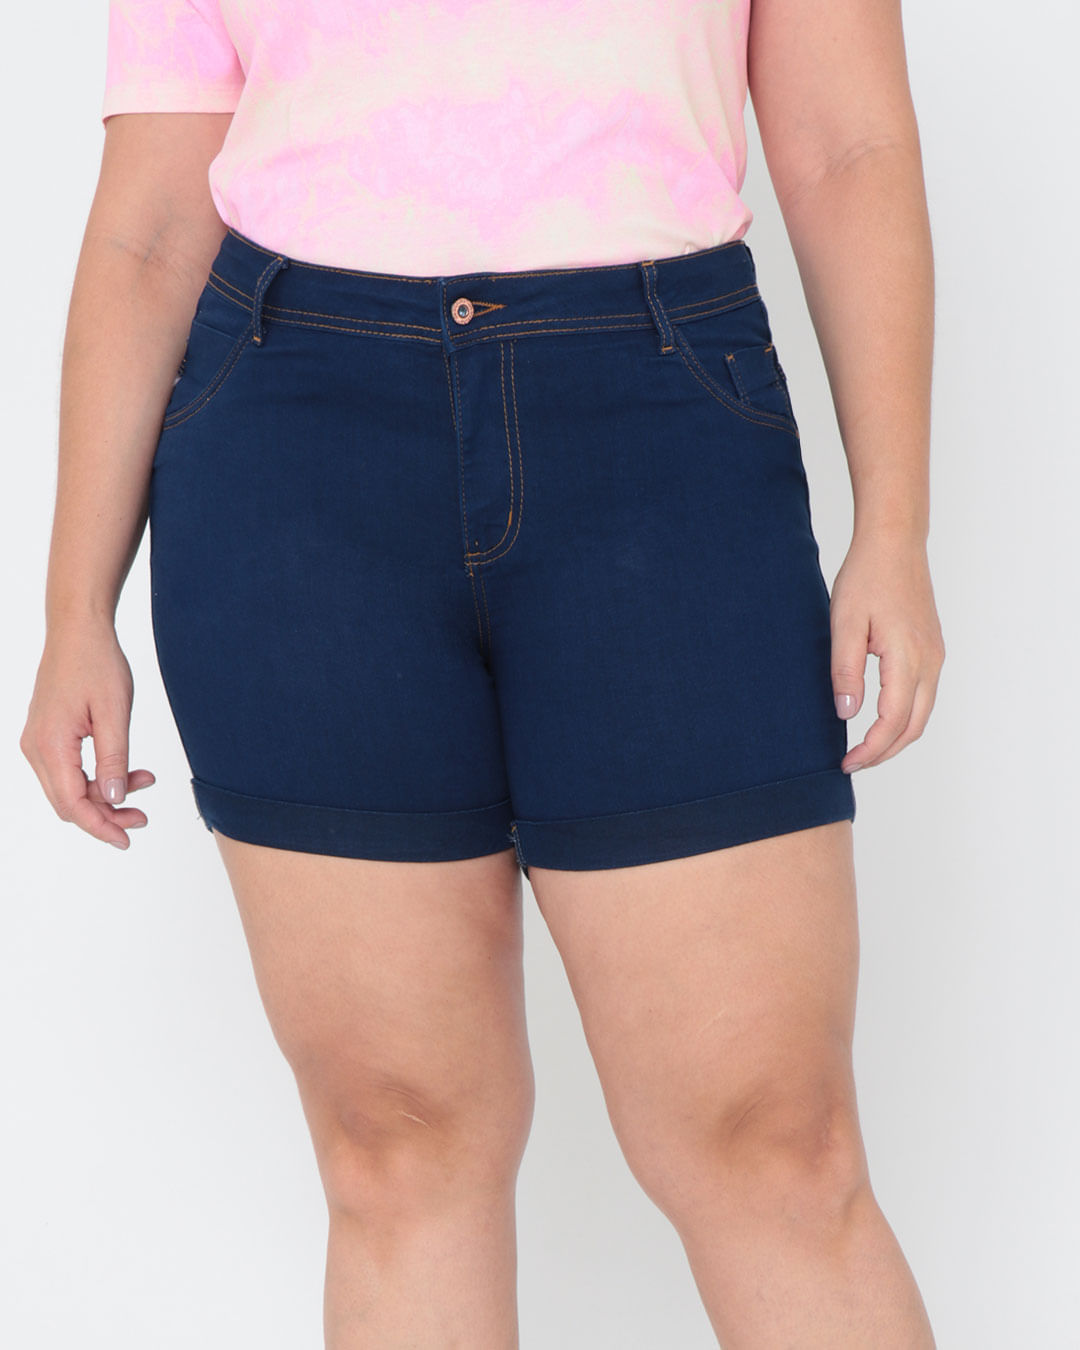 Shorts Feminino Plus Size Basic Azul Marinho